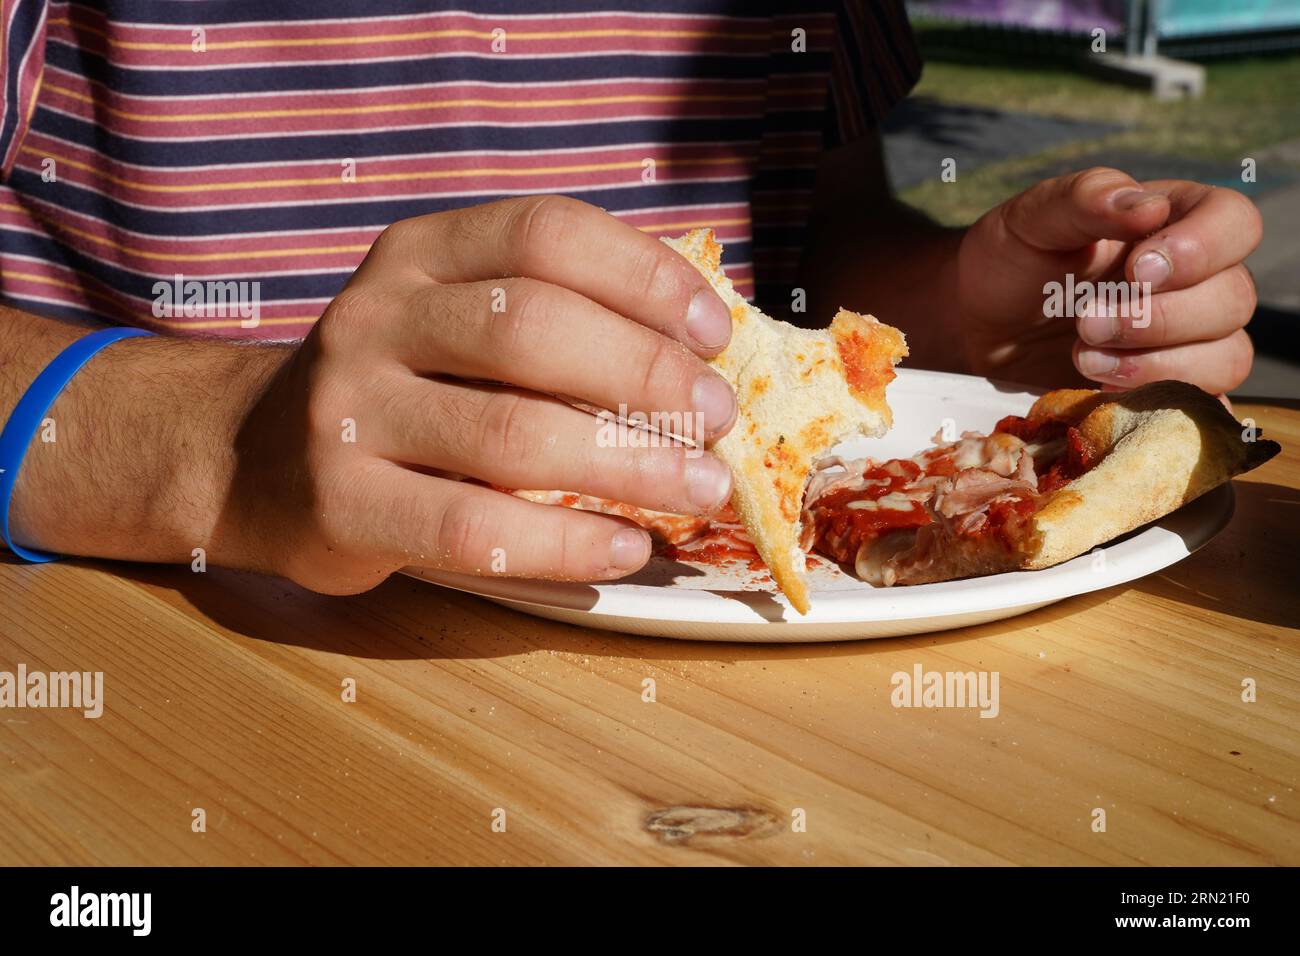 Ragazzo che mangia pizza con le mani nel ristorante all'aperto durante la giornata di sole. Ha una t-shirt rossa con cinturini e un bracciale in gomma blu sulla mano destra. Foto Stock